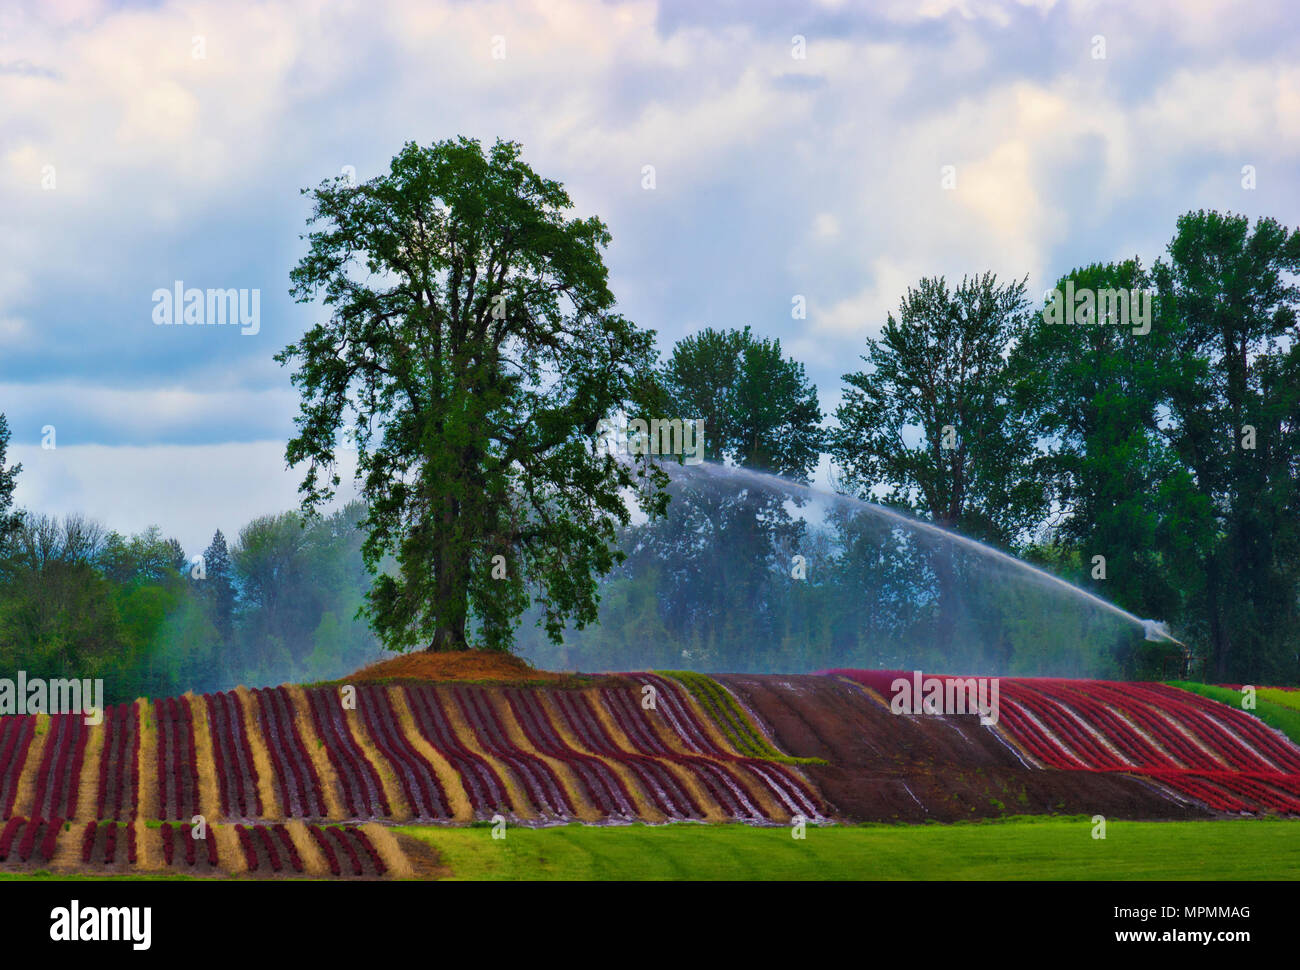 Eine große Bewässerung Sprinkler schießt Wasser über die bunten Reihen von Pflanzen auf sanften Hügeln direkt unter einer großen Eiche Baum auf Swauvie Insel Stockfoto